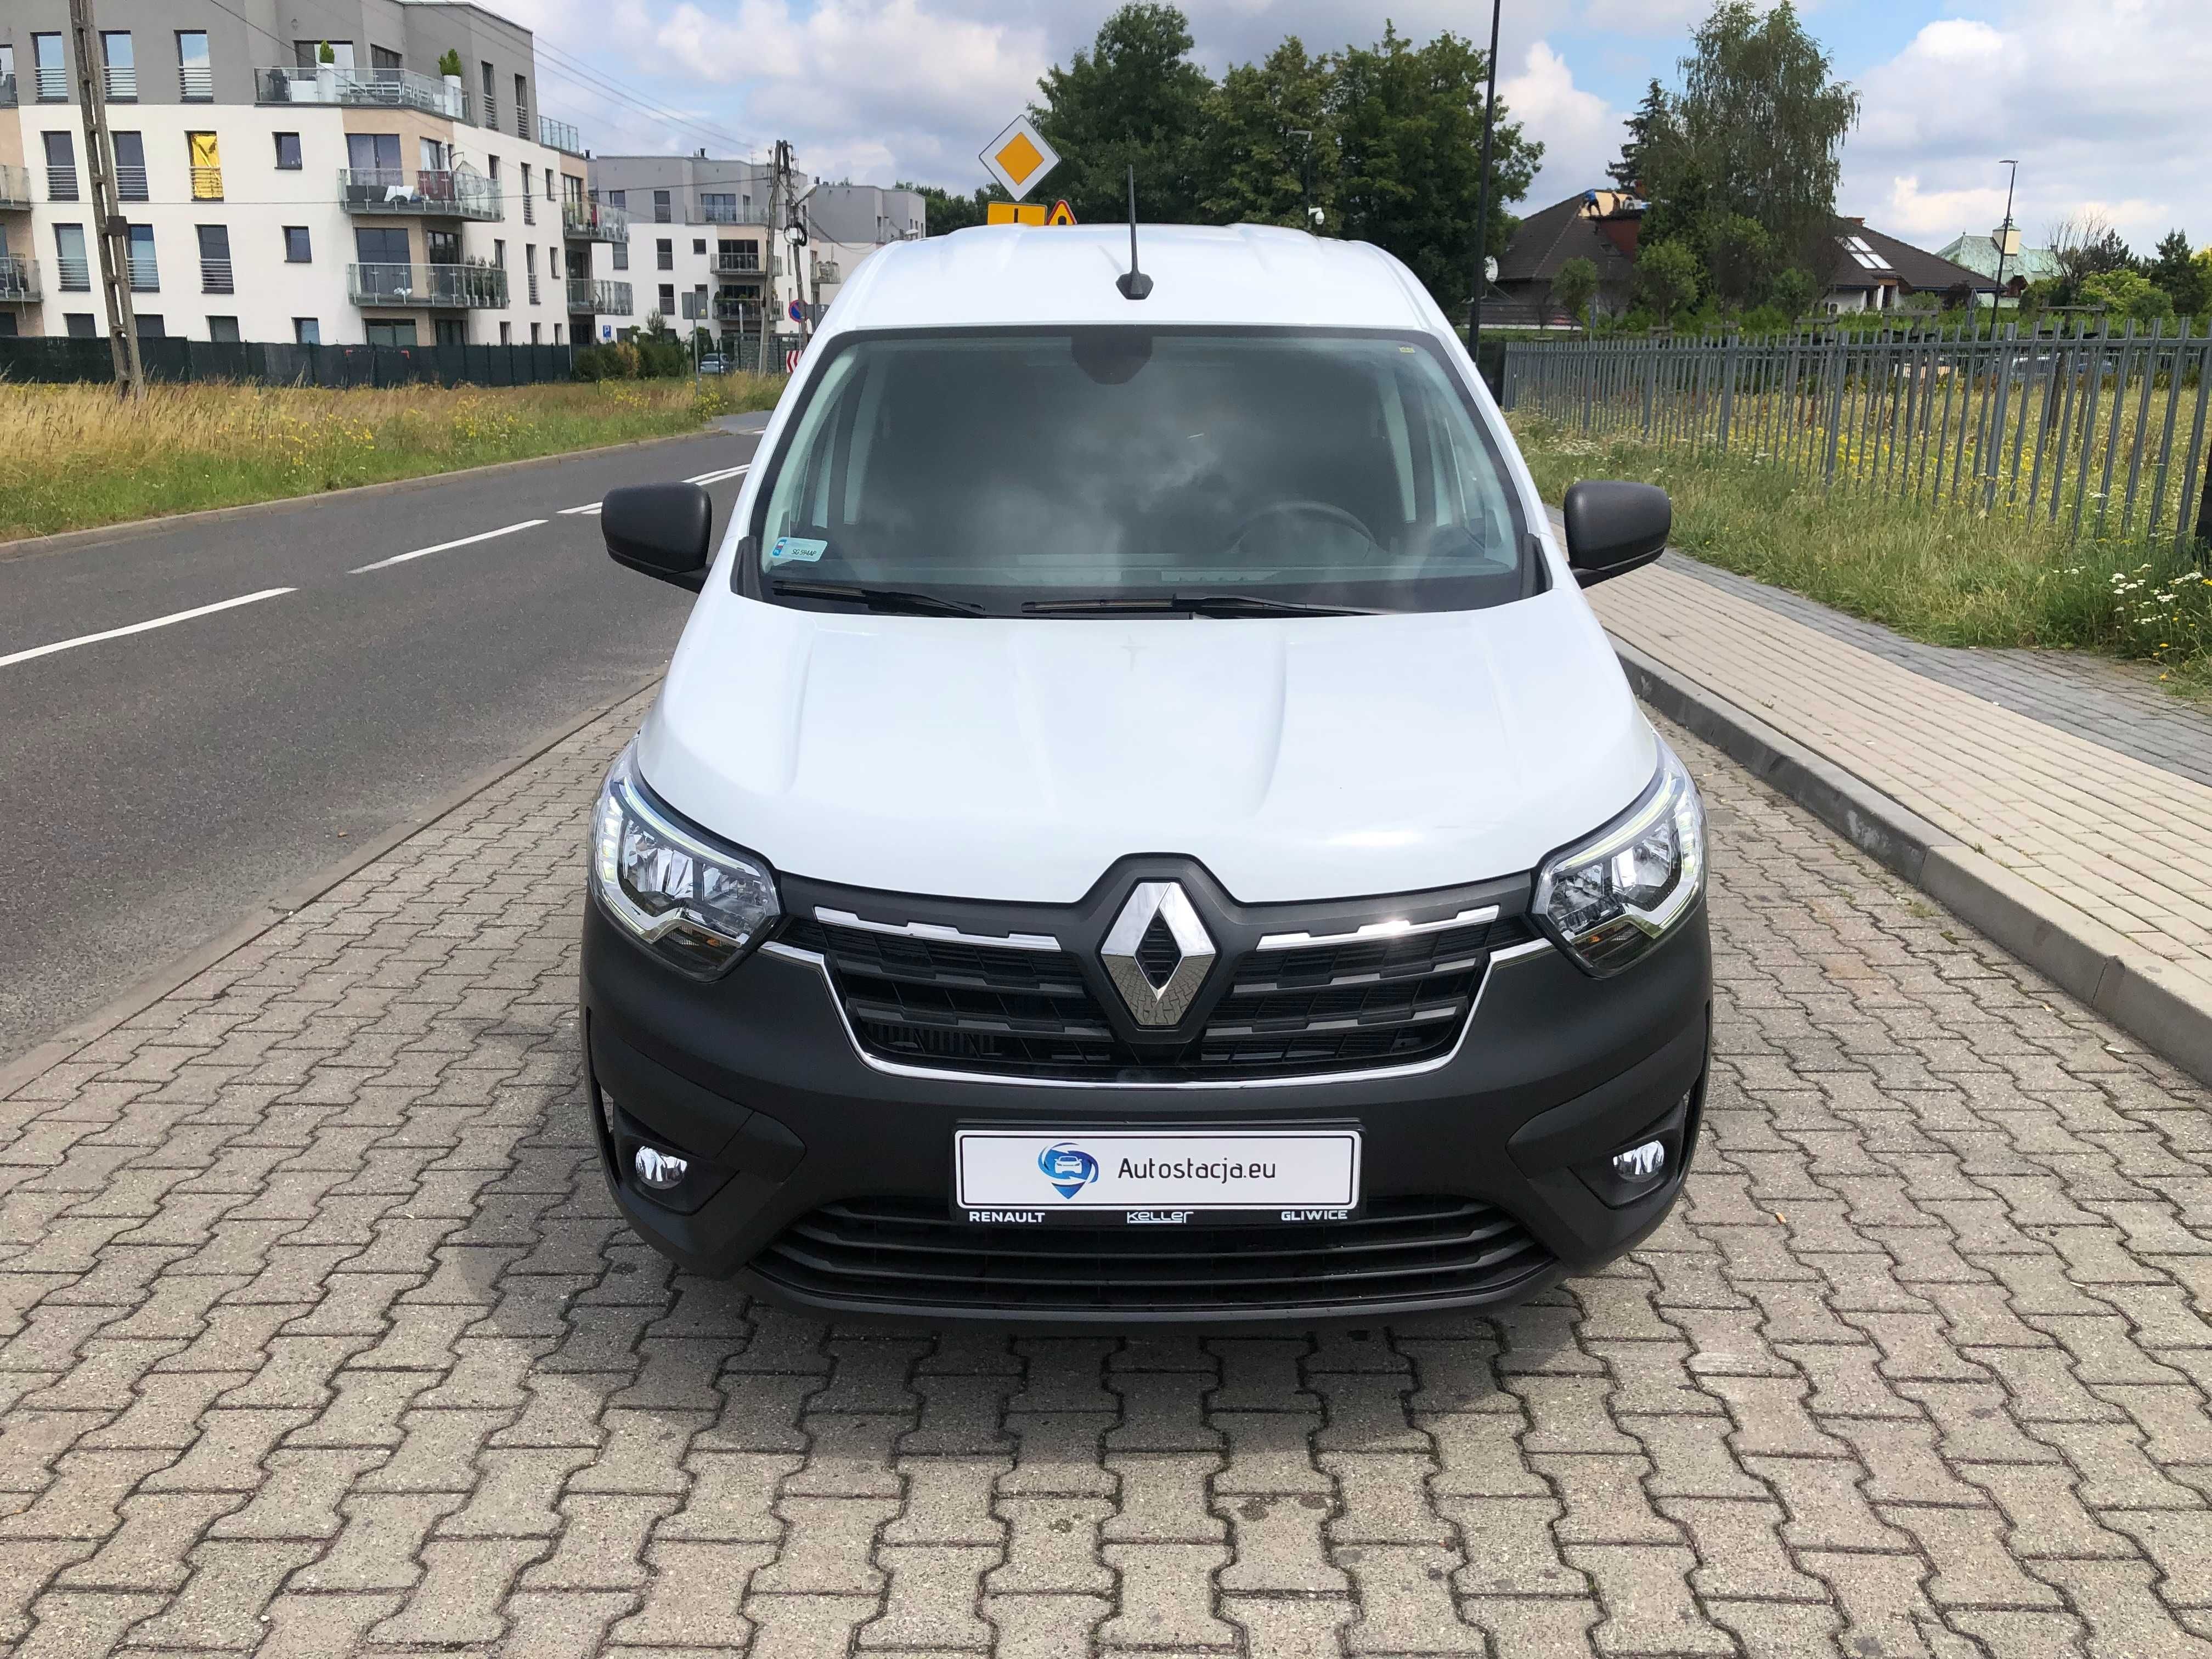 Renault Express VAN 100KM wynajem z wykupem w kwocie 2290 zł BEZ BIK